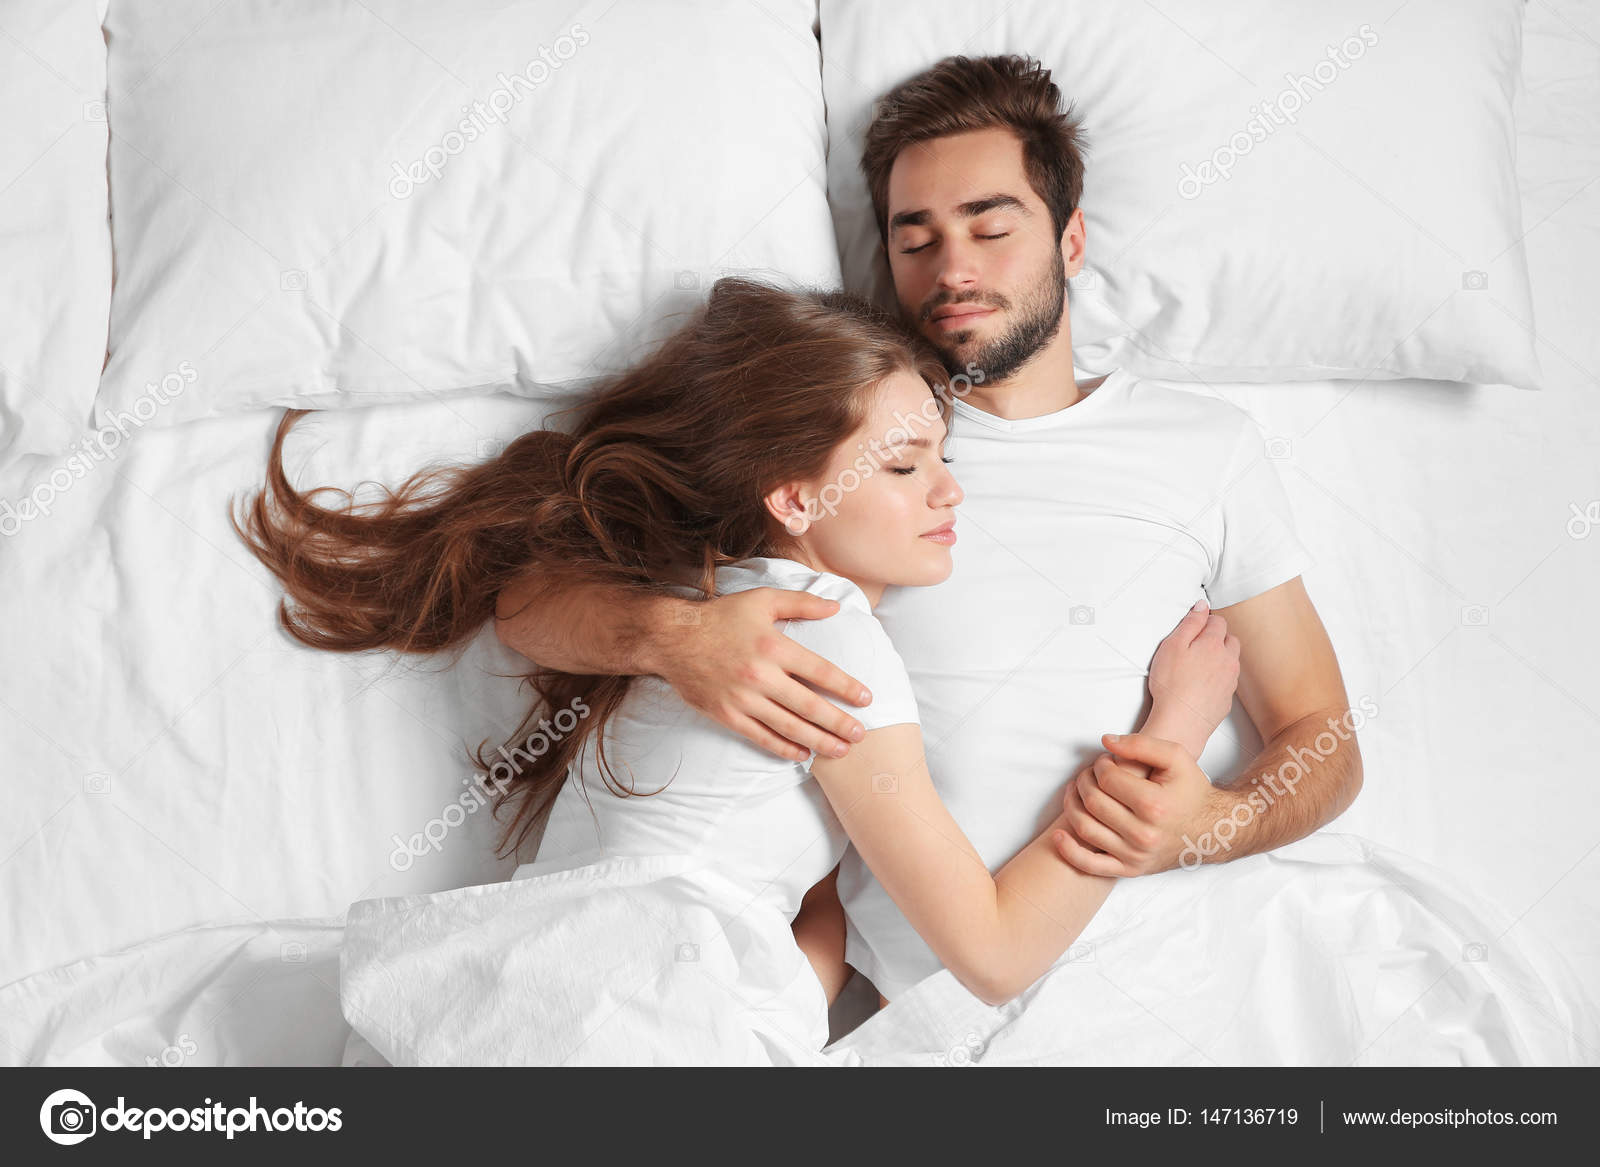 Муж жена в спальне русские. Мужчина и женщина в спальне. Мужчина и женщина в постели. Девушка с мужчиной в постели. Супружеская пара в постели.